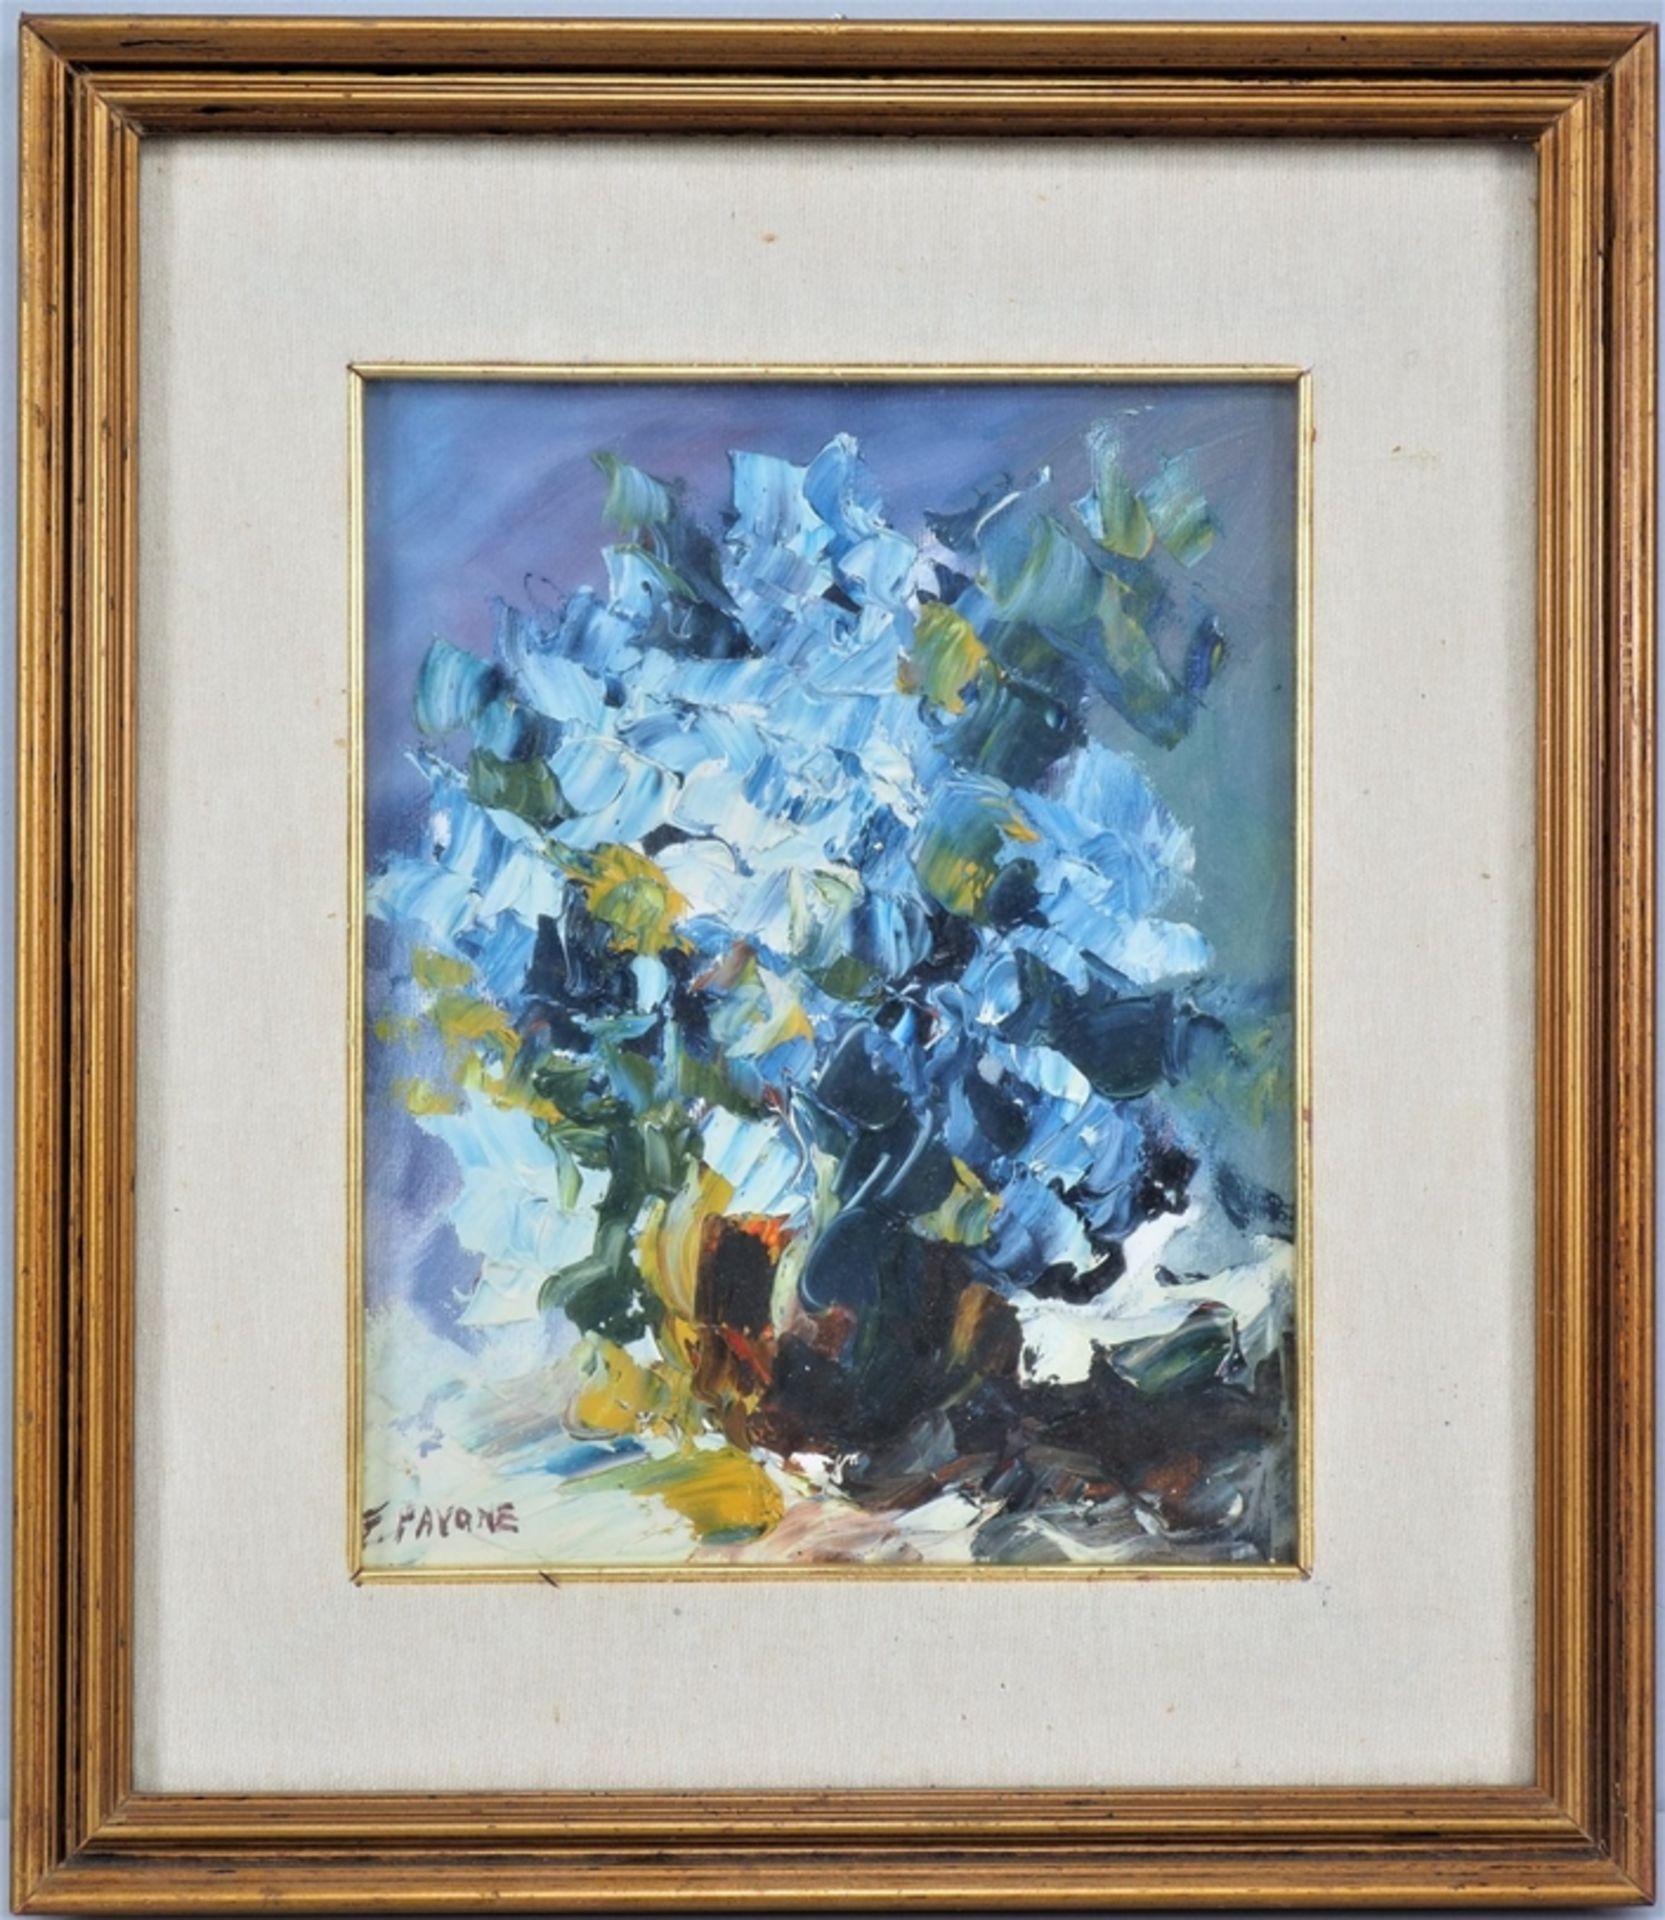 Franco Pavone (*1945, Messina) - Abstrahiertes Blumenstillleben, 1982 - Bild 2 aus 3